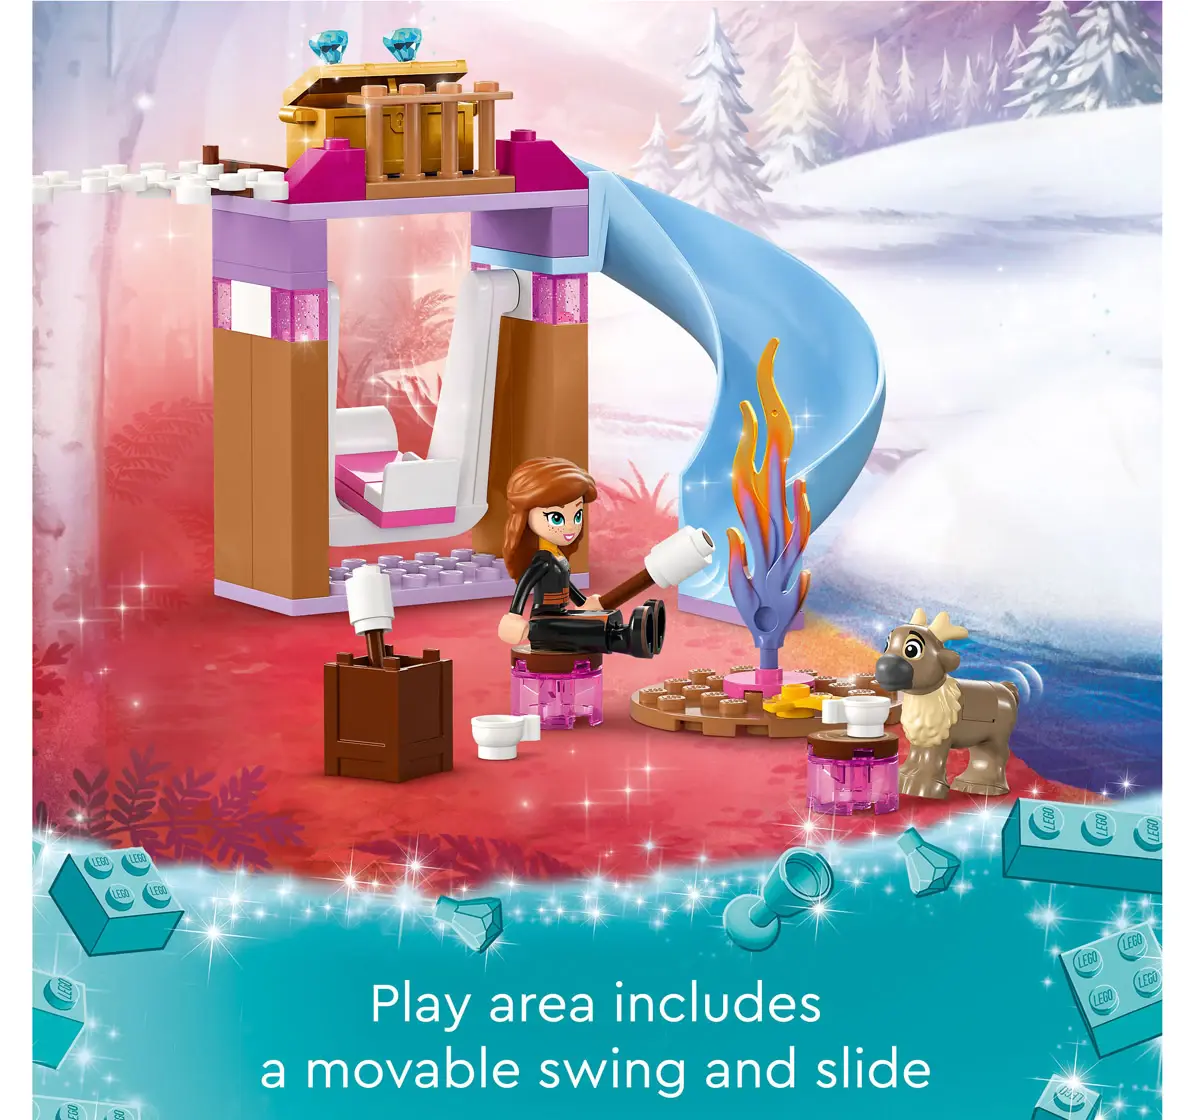 Lego Disney Frozen ElsaS Frozen Castle 43238 Multicolour For Kids Ages 4Y+ (163 Pieces) 